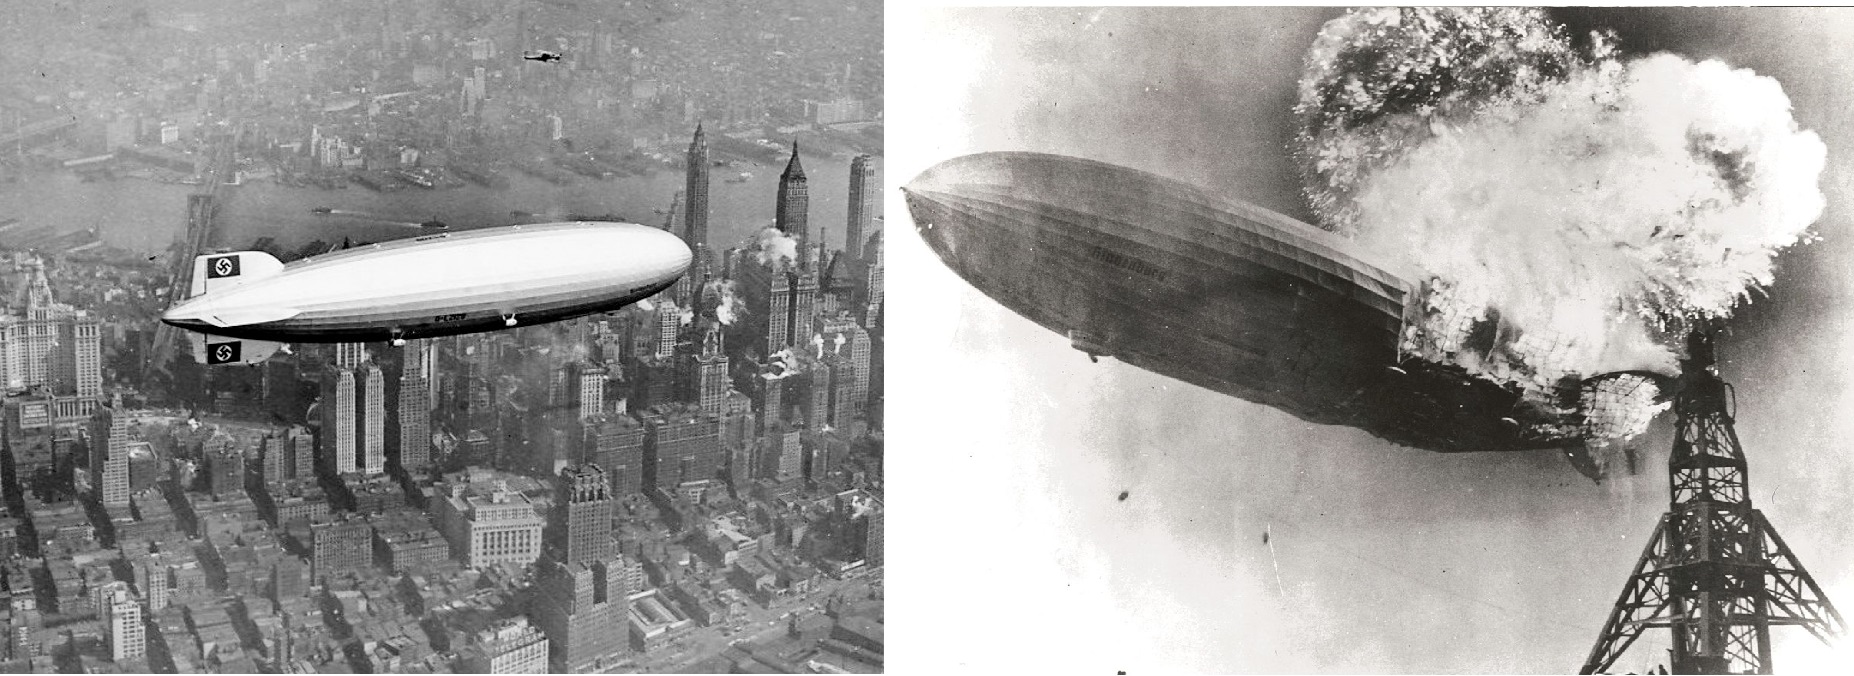 La aeronave alemana Hindenburg (izquierda) y Hindenburg se estrellan y explotan contra una torre.